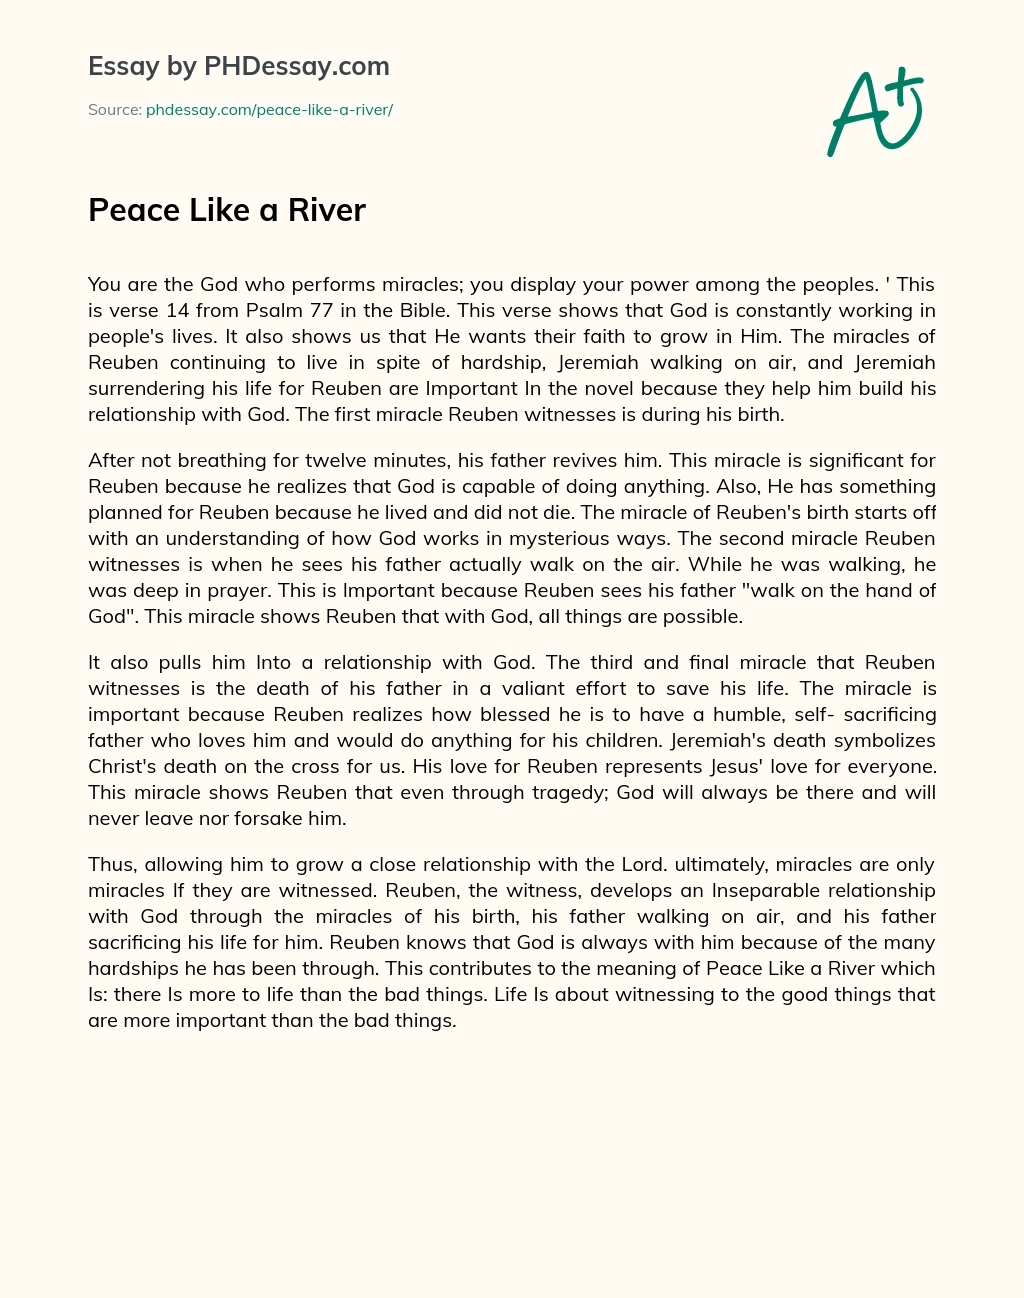 Peace Like a River essay